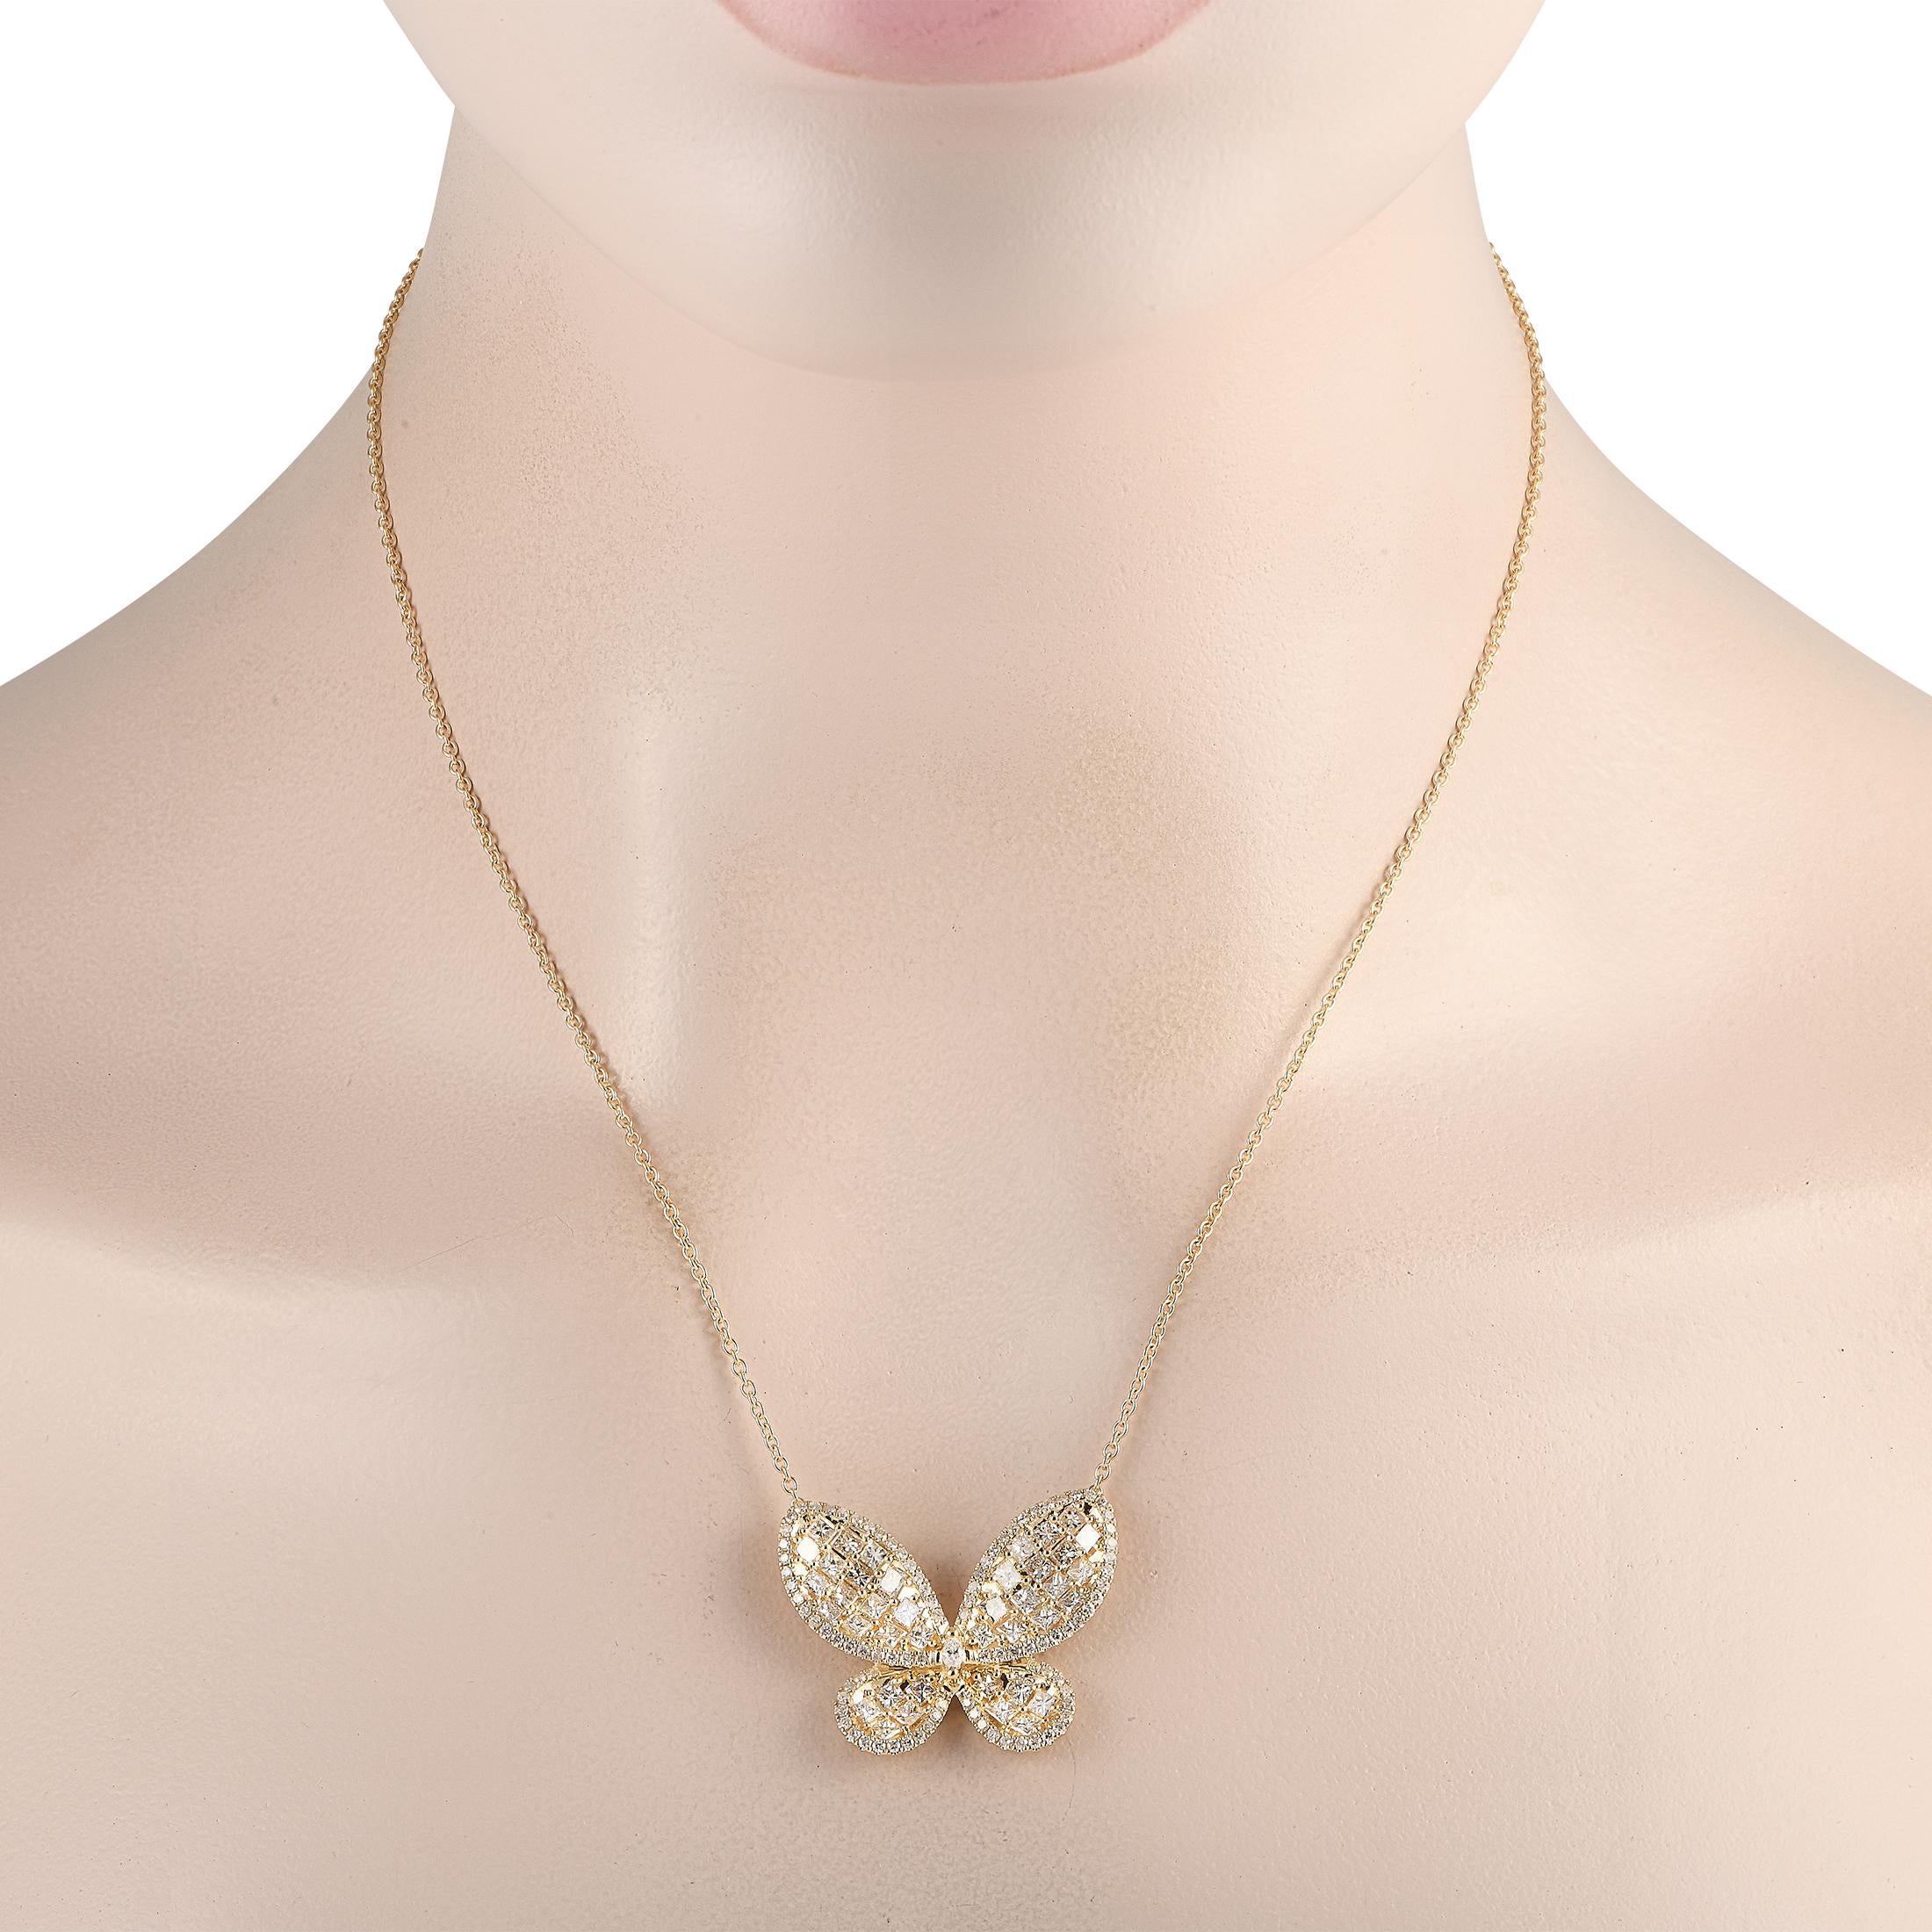 Ein Schmetterlingsanhänger erwacht dank funkelnder Diamanten von insgesamt 3,73 Karat auf dieser schillernden Halskette zum Leben. Der charmante und elegante Anhänger ist 1,0 lang und 1,25 breit und hängt an einer 17er-Kette. Das Schmuckstück wird